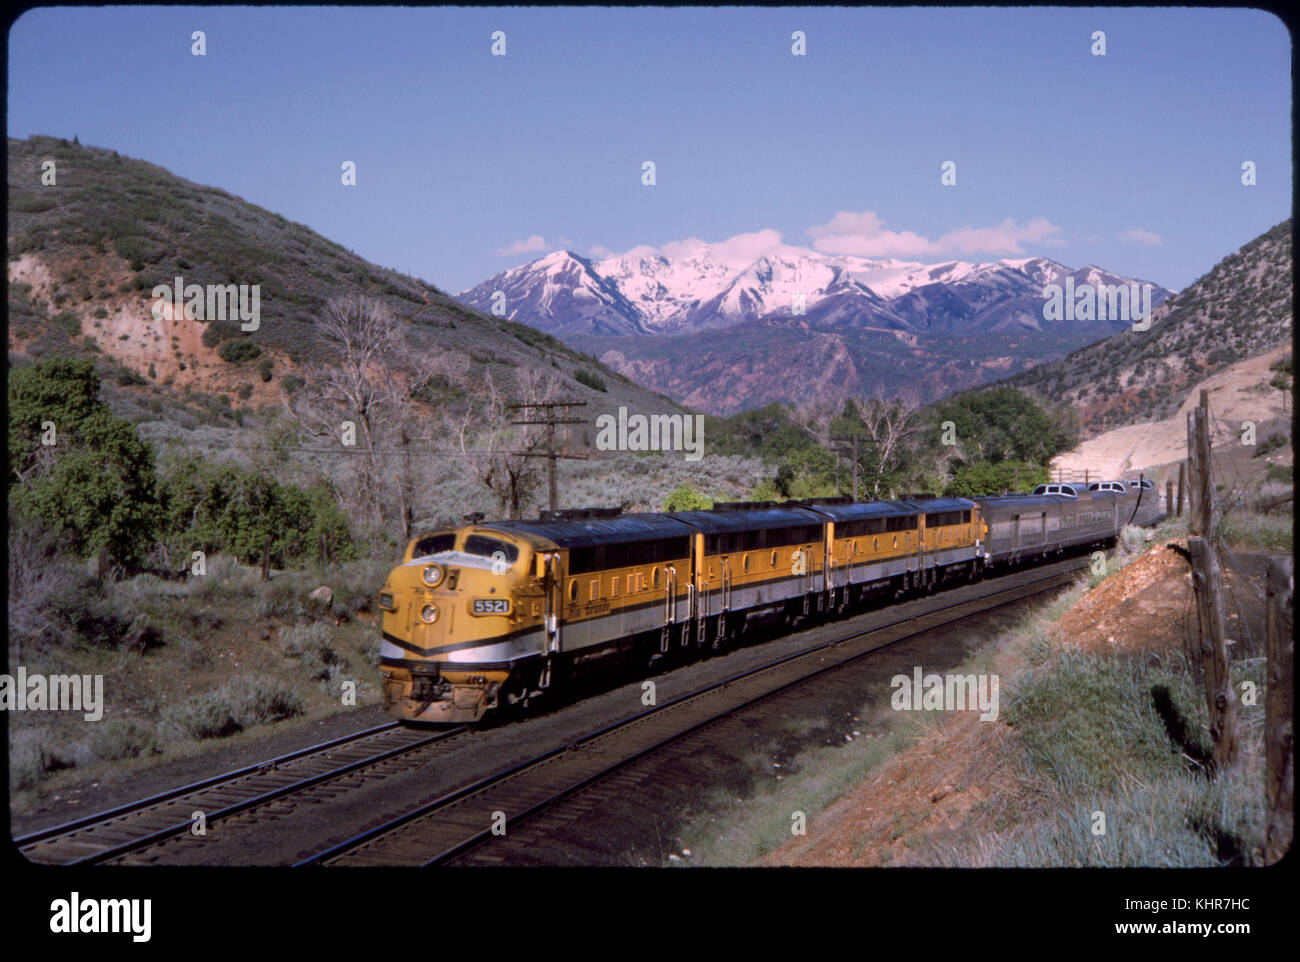 California zephyr train avec des montagnes enneigées en arrière-plan, de l'Utah, USA, 1964 Banque D'Images